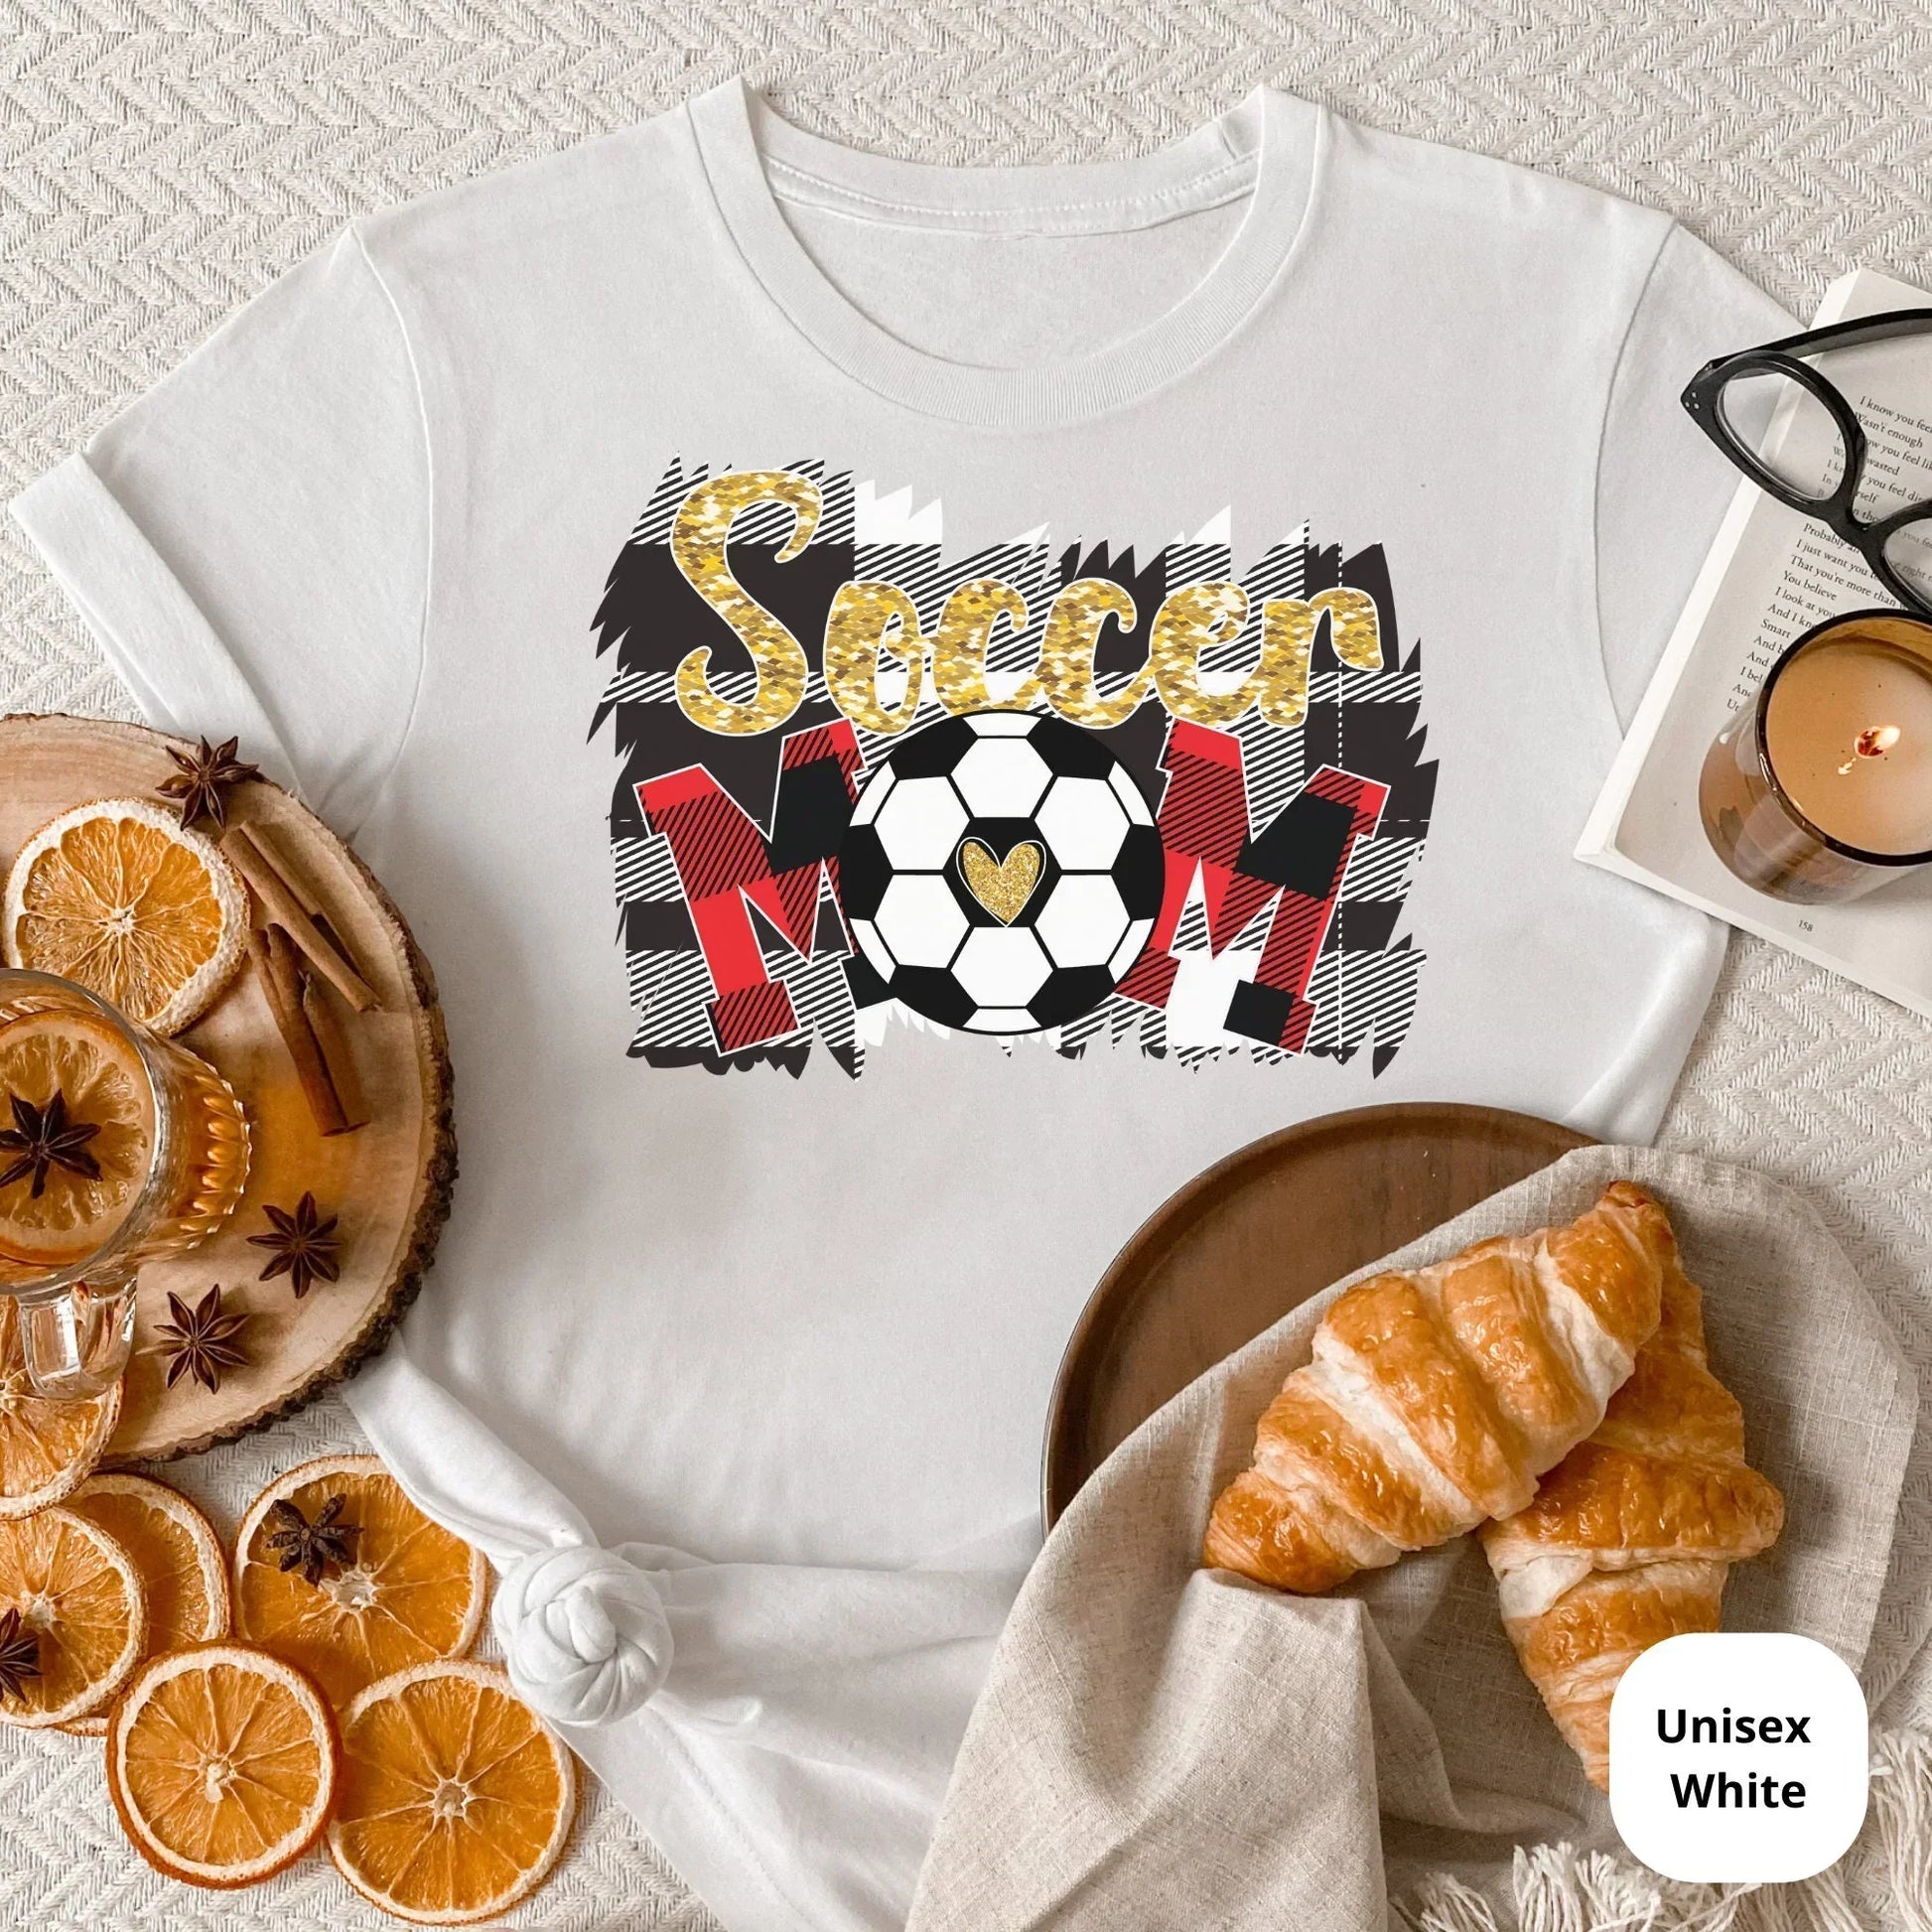 Soccer Mom shirt, Sports Momma T-Shirt, Soccer Baseball, Game Day Tee, Soccer ball, Soccer Player, Team Mommy, Women's Soccer, Gift for Mom